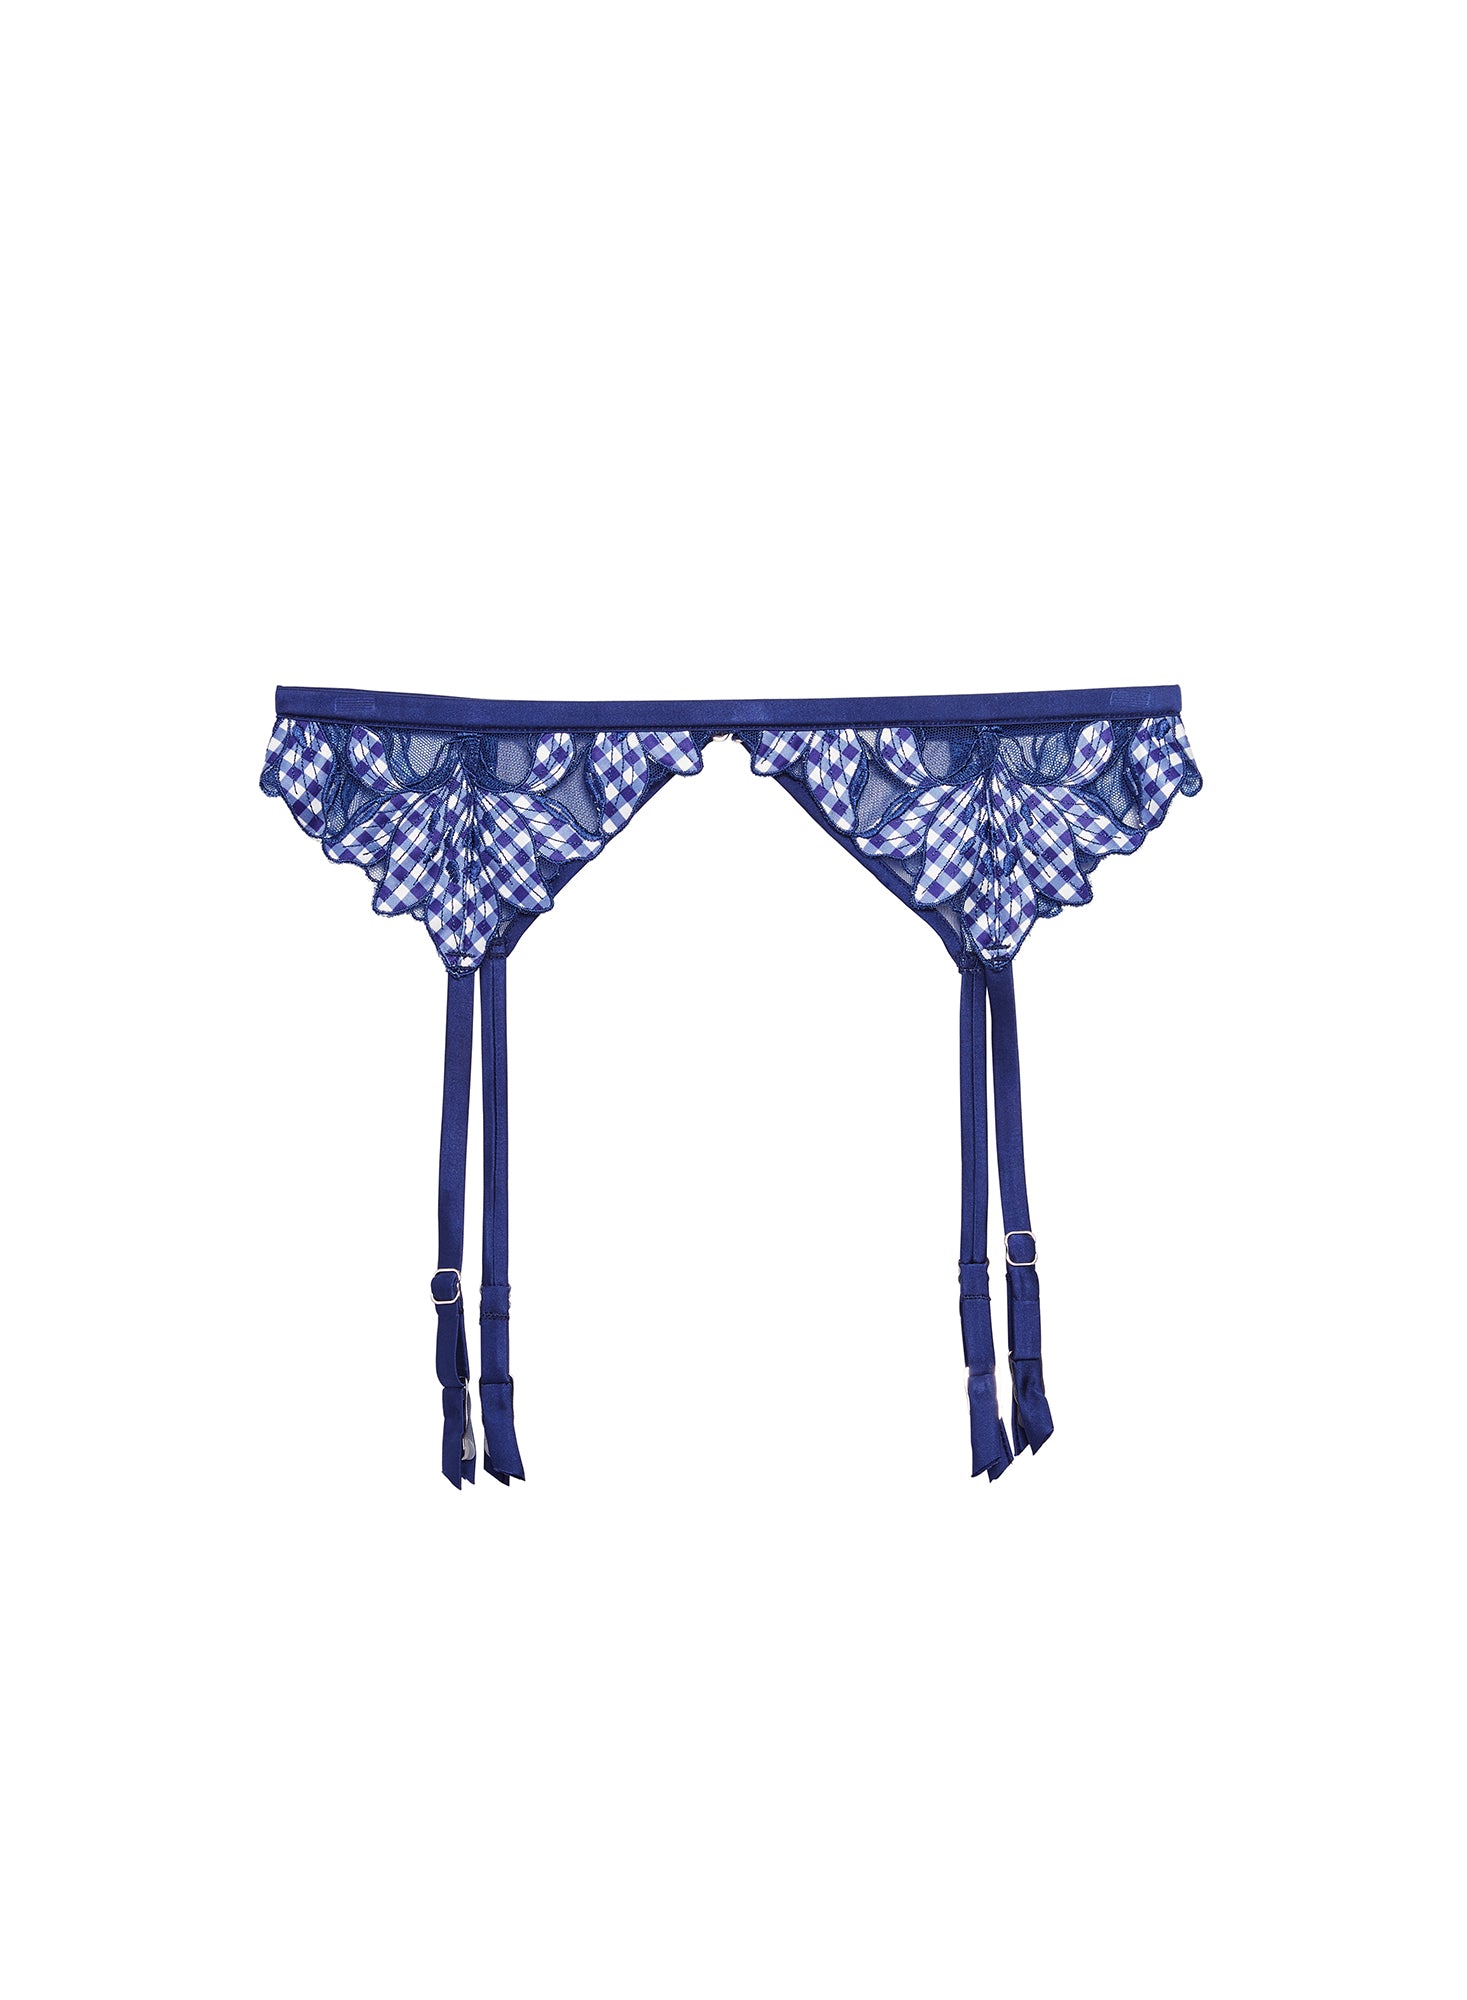 Shop Fleur Du Mal Lily Embroidery Garter Belt In Starry Blue Gingham